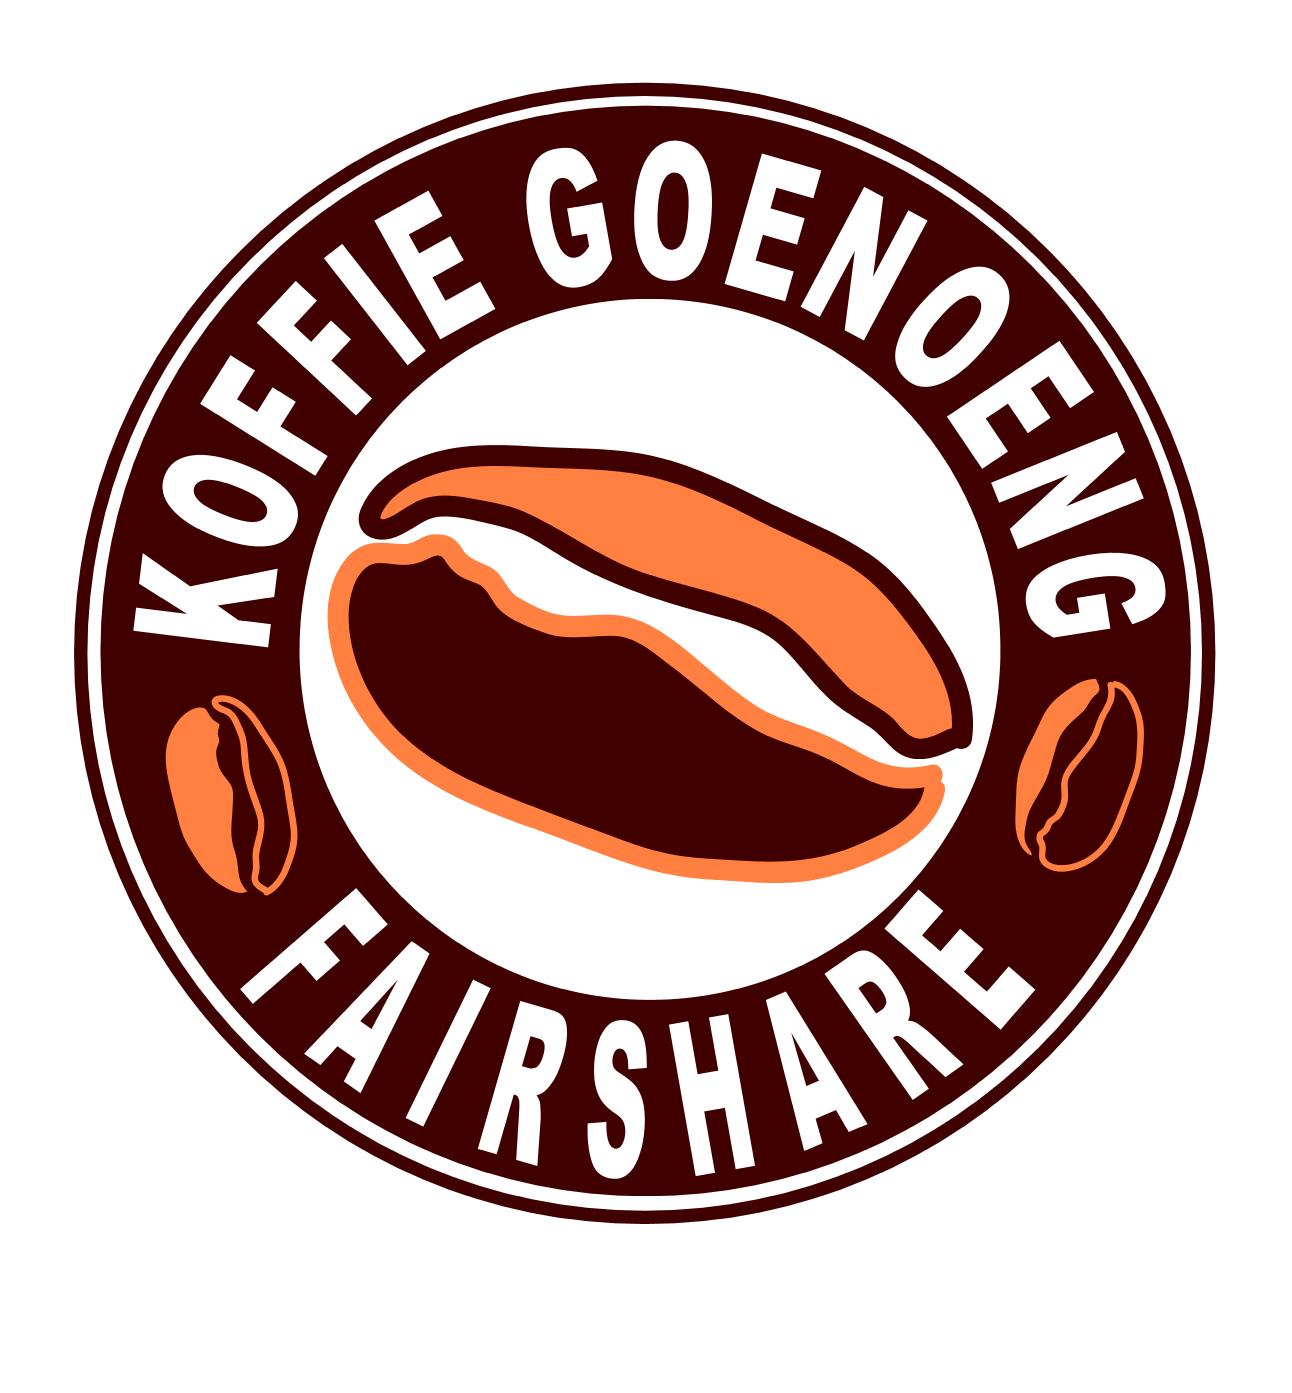 Koffie Goenoeng FairSHARE